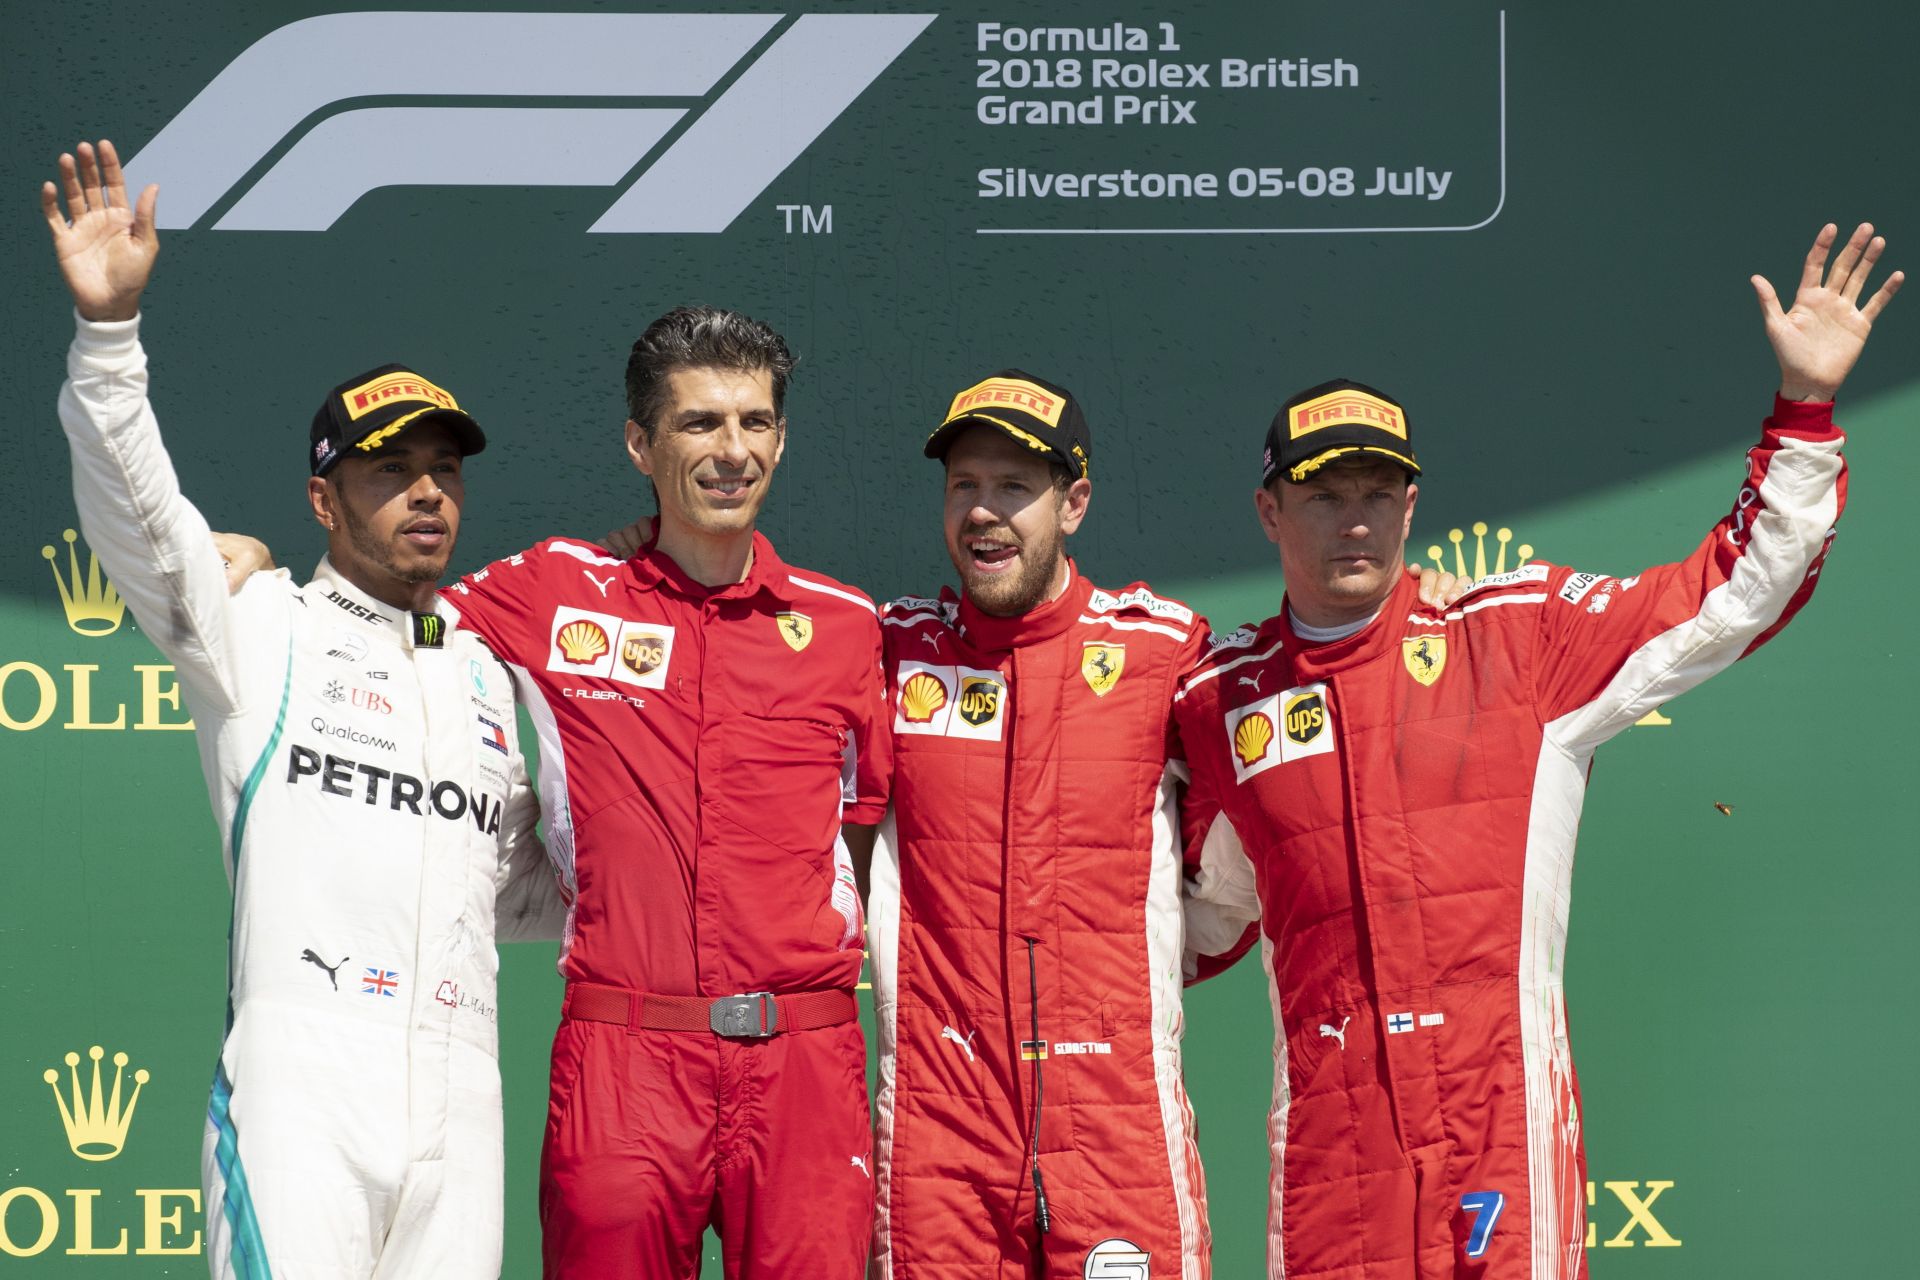 British Formula One driver Lewis Hamilton of Mercedes AMG GP, Claudio Albertini